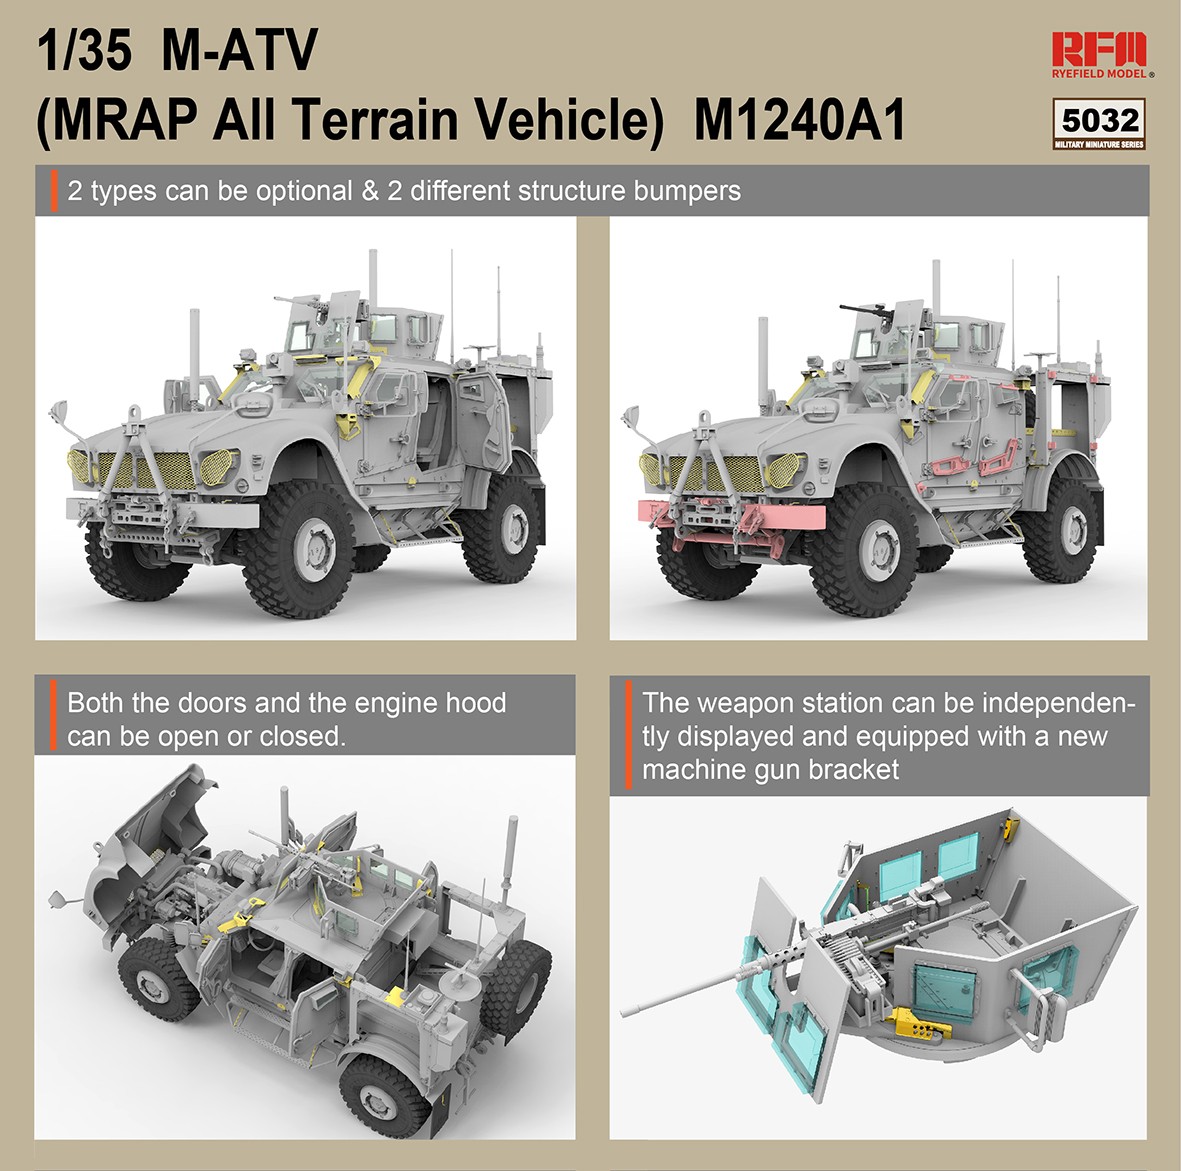 1/35 现代美国 M1240A1 M-ATV 防地雷反伏击车 - 点击图像关闭